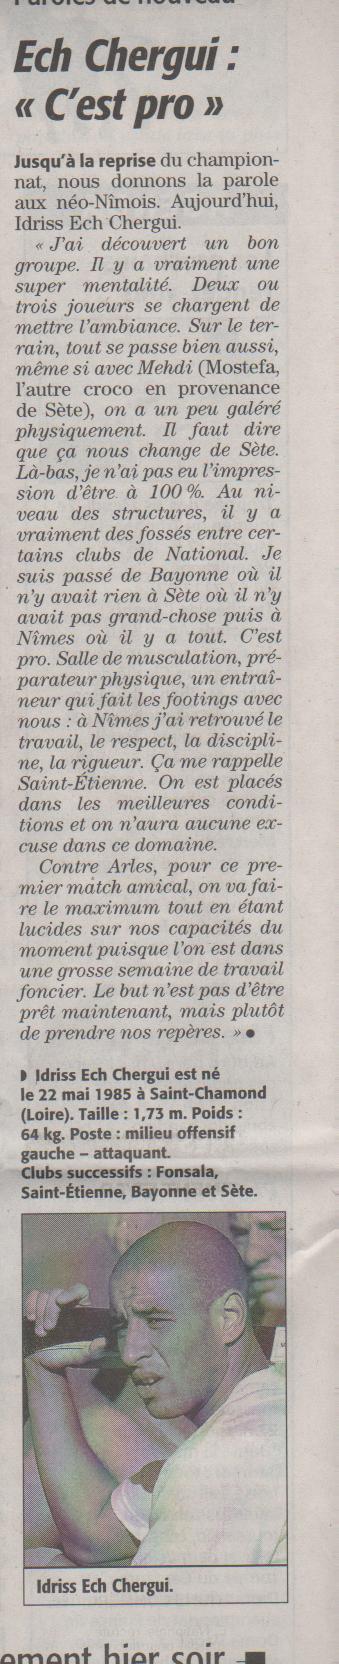 Présentation du Nîmes Olympique ! - Page 5 Ml10_012